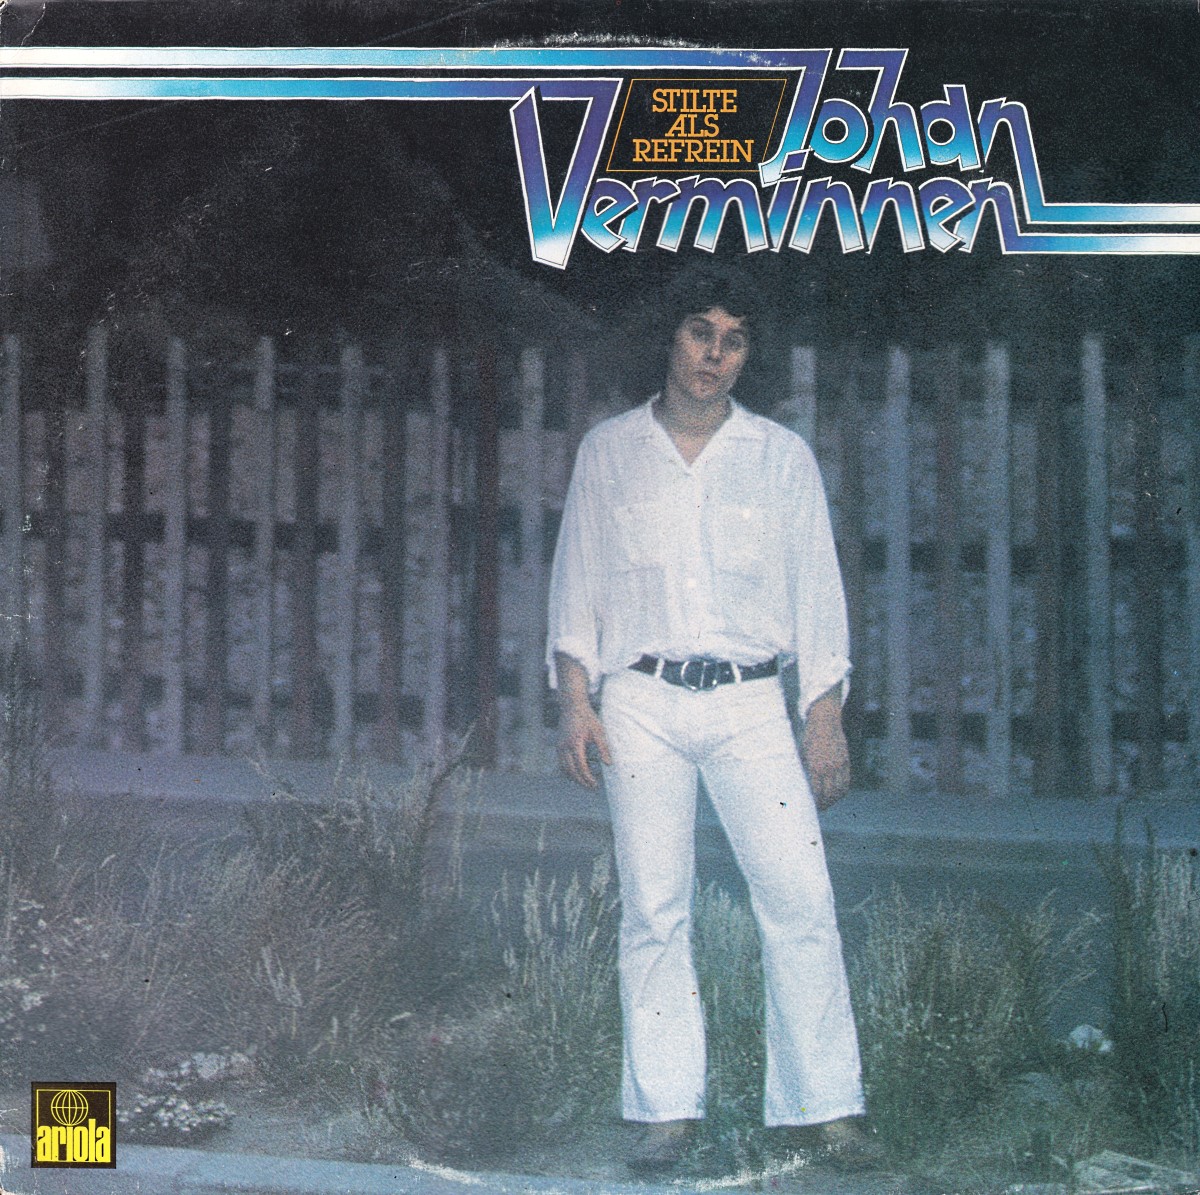 Johan Verminnen - Stilte Als Refrein (1976)